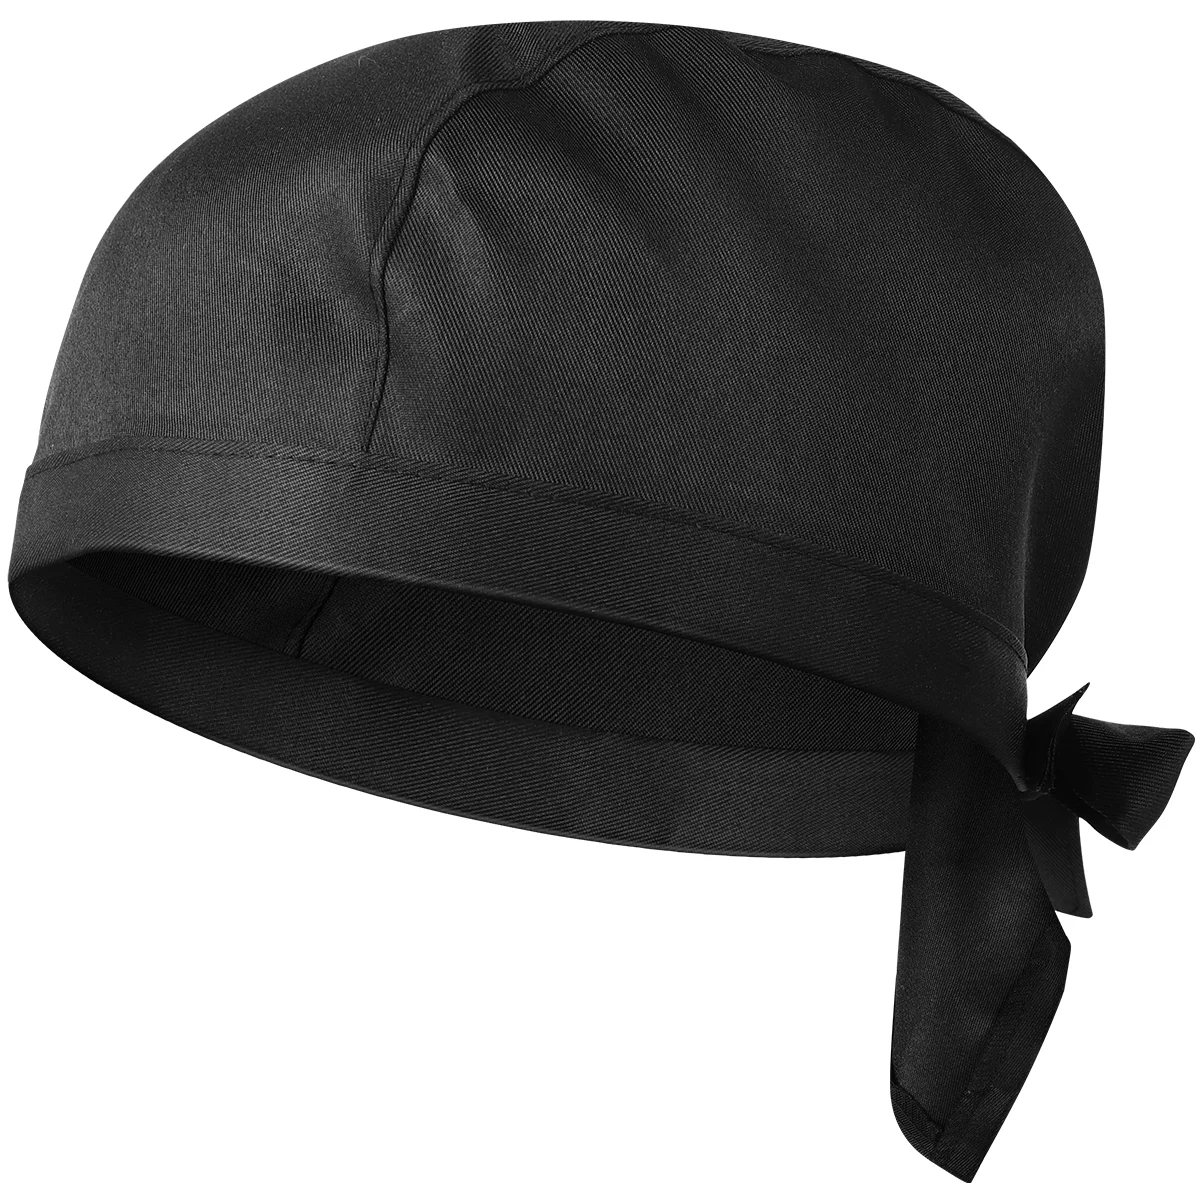 

BESTOMZ Pirate Chef Hat Waiter Uniform Bakery BBQ Grill Hat Restaurant Cook Work Hat (Black)